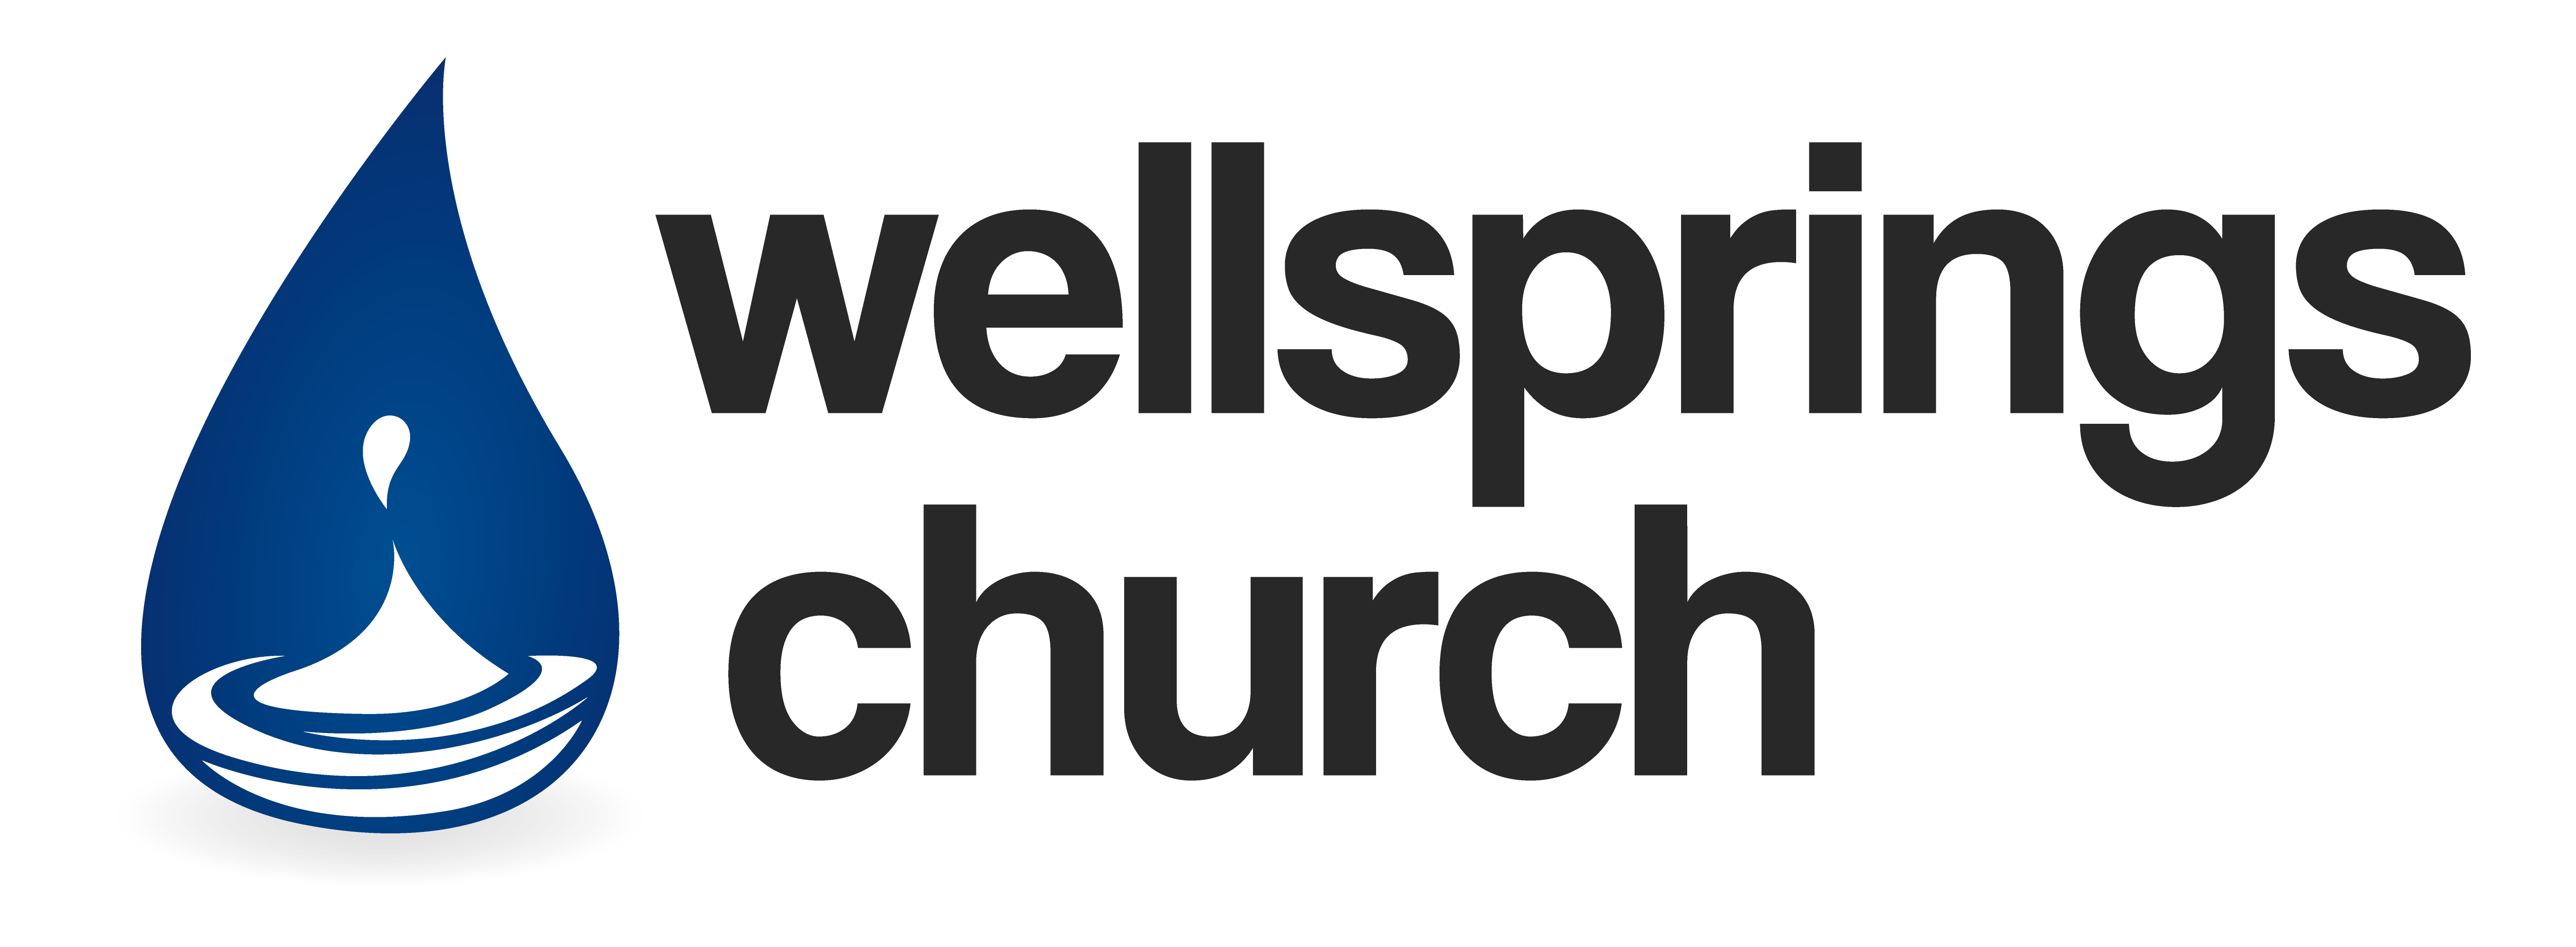 Wellsprings Church